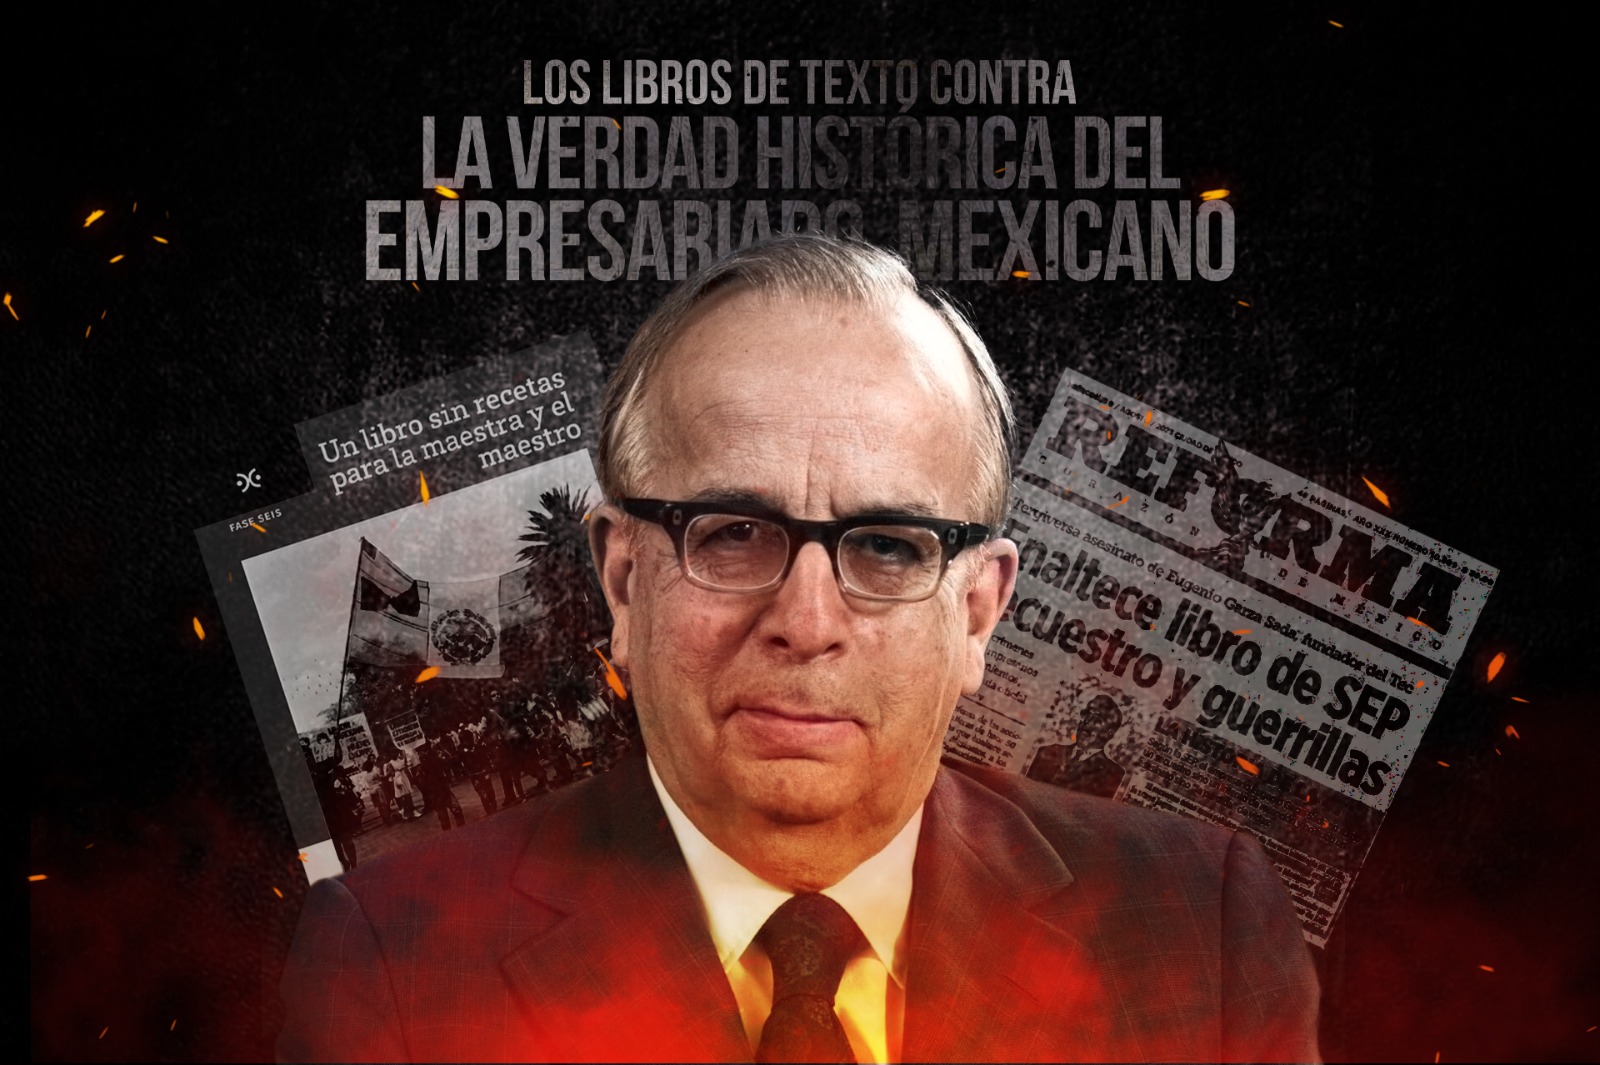 Los libros de texto contra la Verdad Histórica del empresariado mexicano